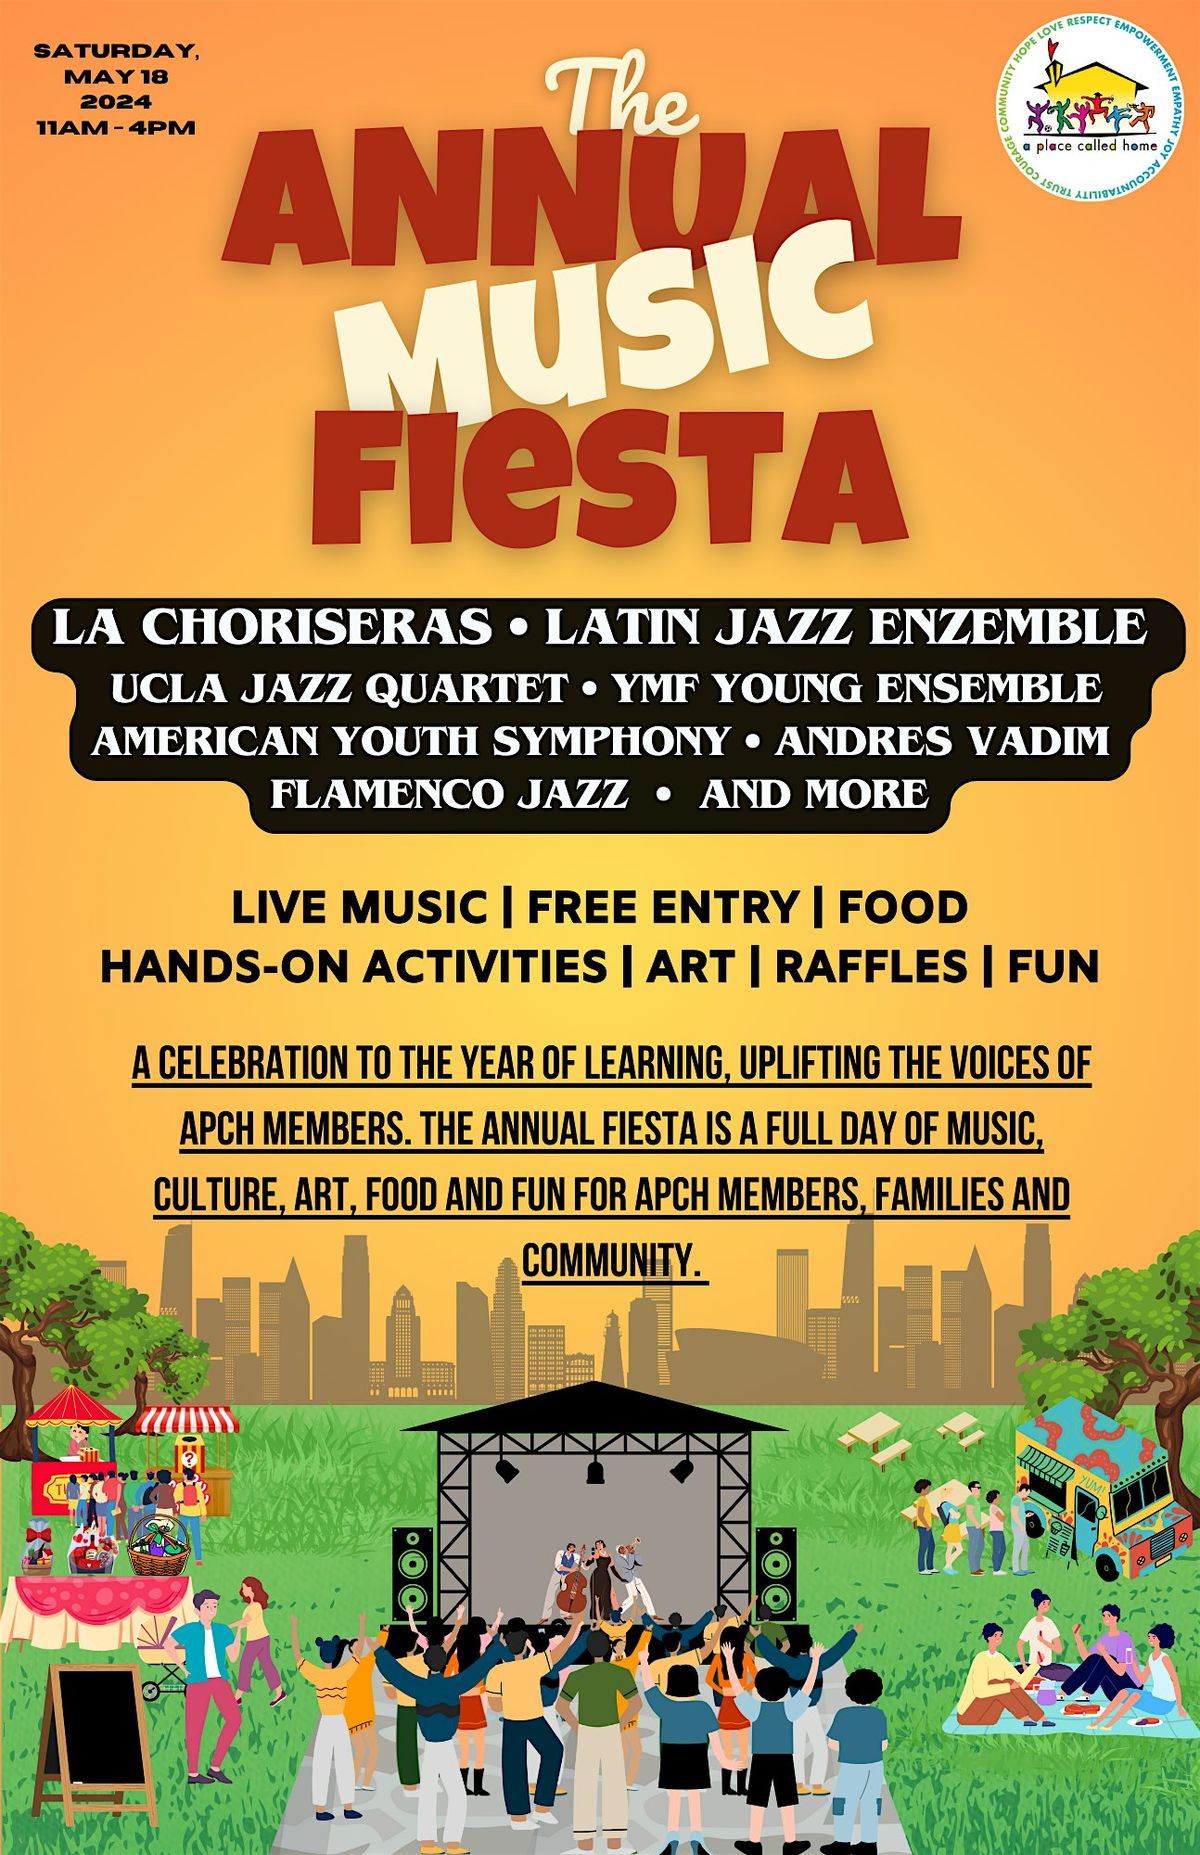 The Annual Music Fiesta